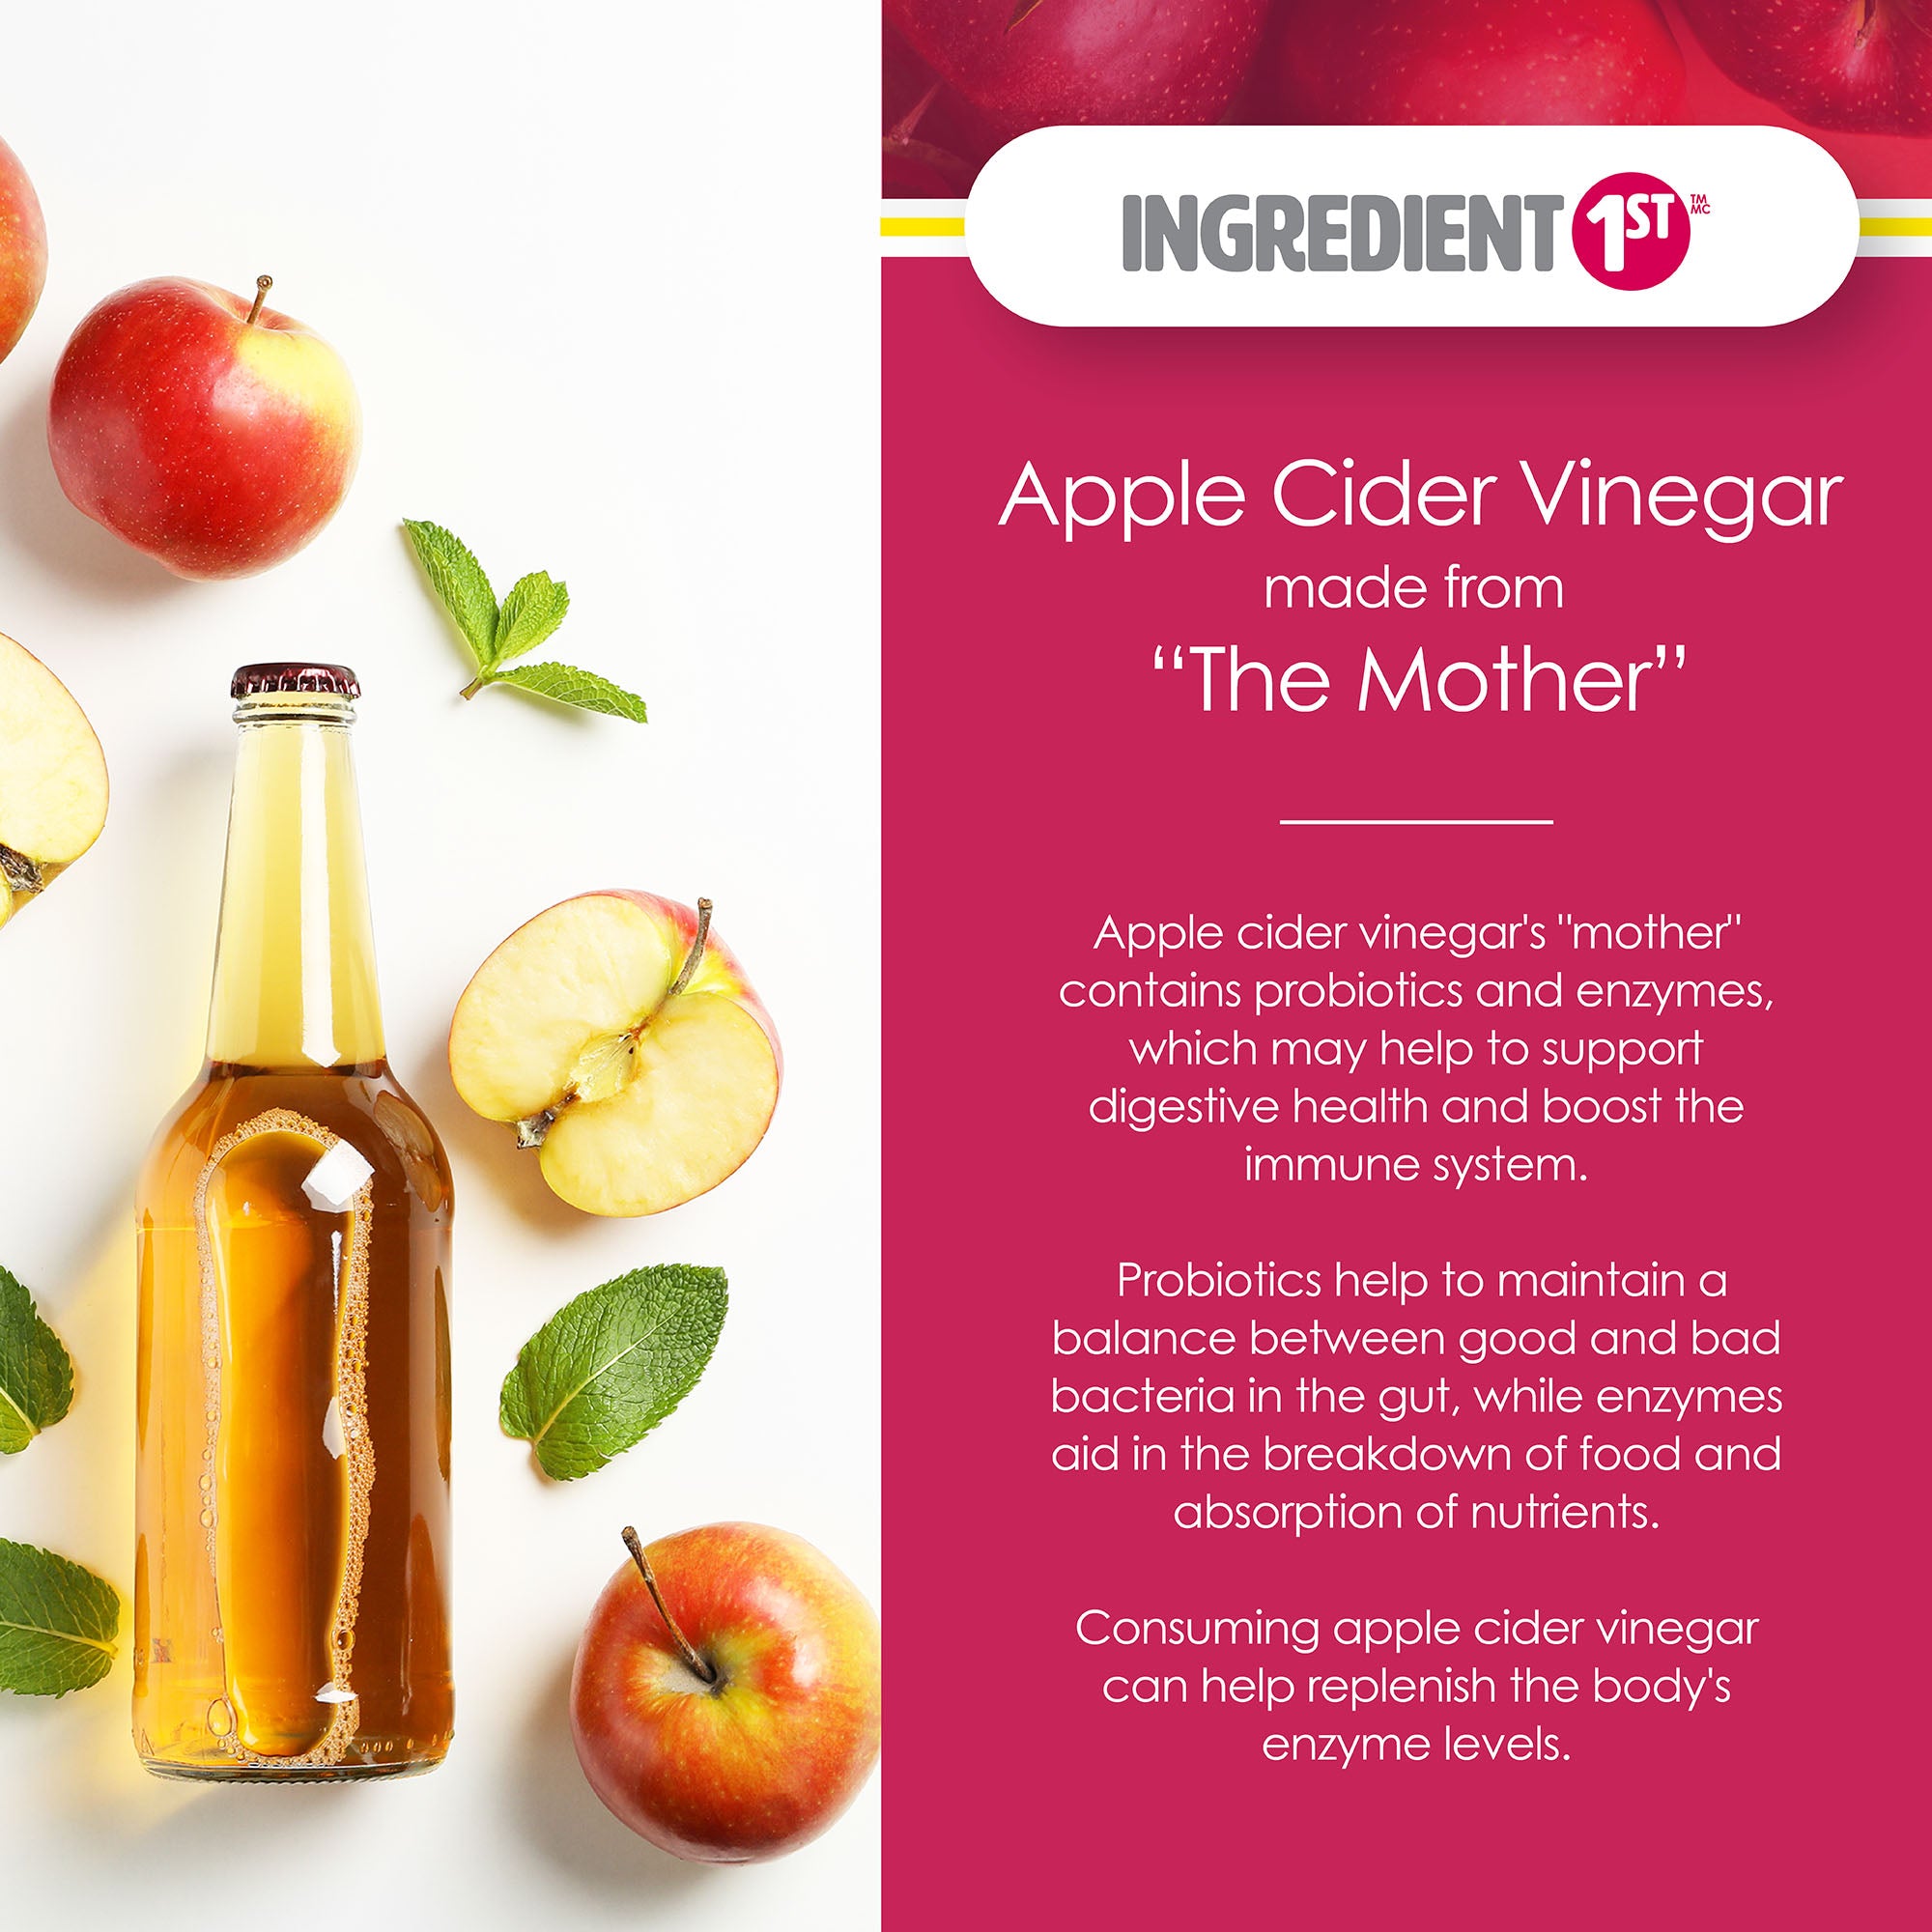 Do Apple Cider Vinegar Gummies Have Health Benefits?